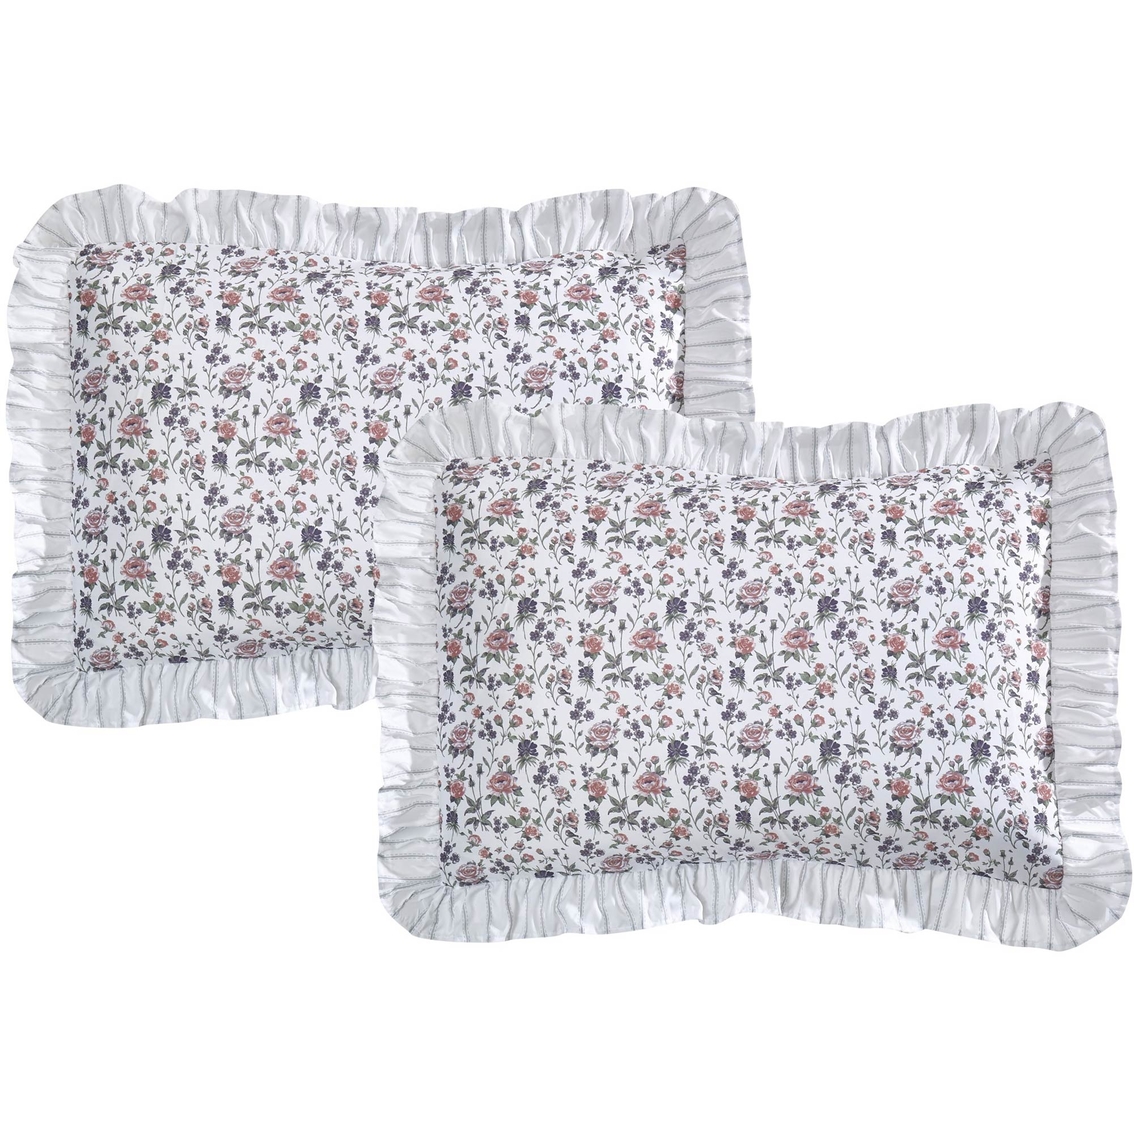 Brown & Grey Michelle Rose 6-Piece Comforter Set, Queen - Image 4 of 6